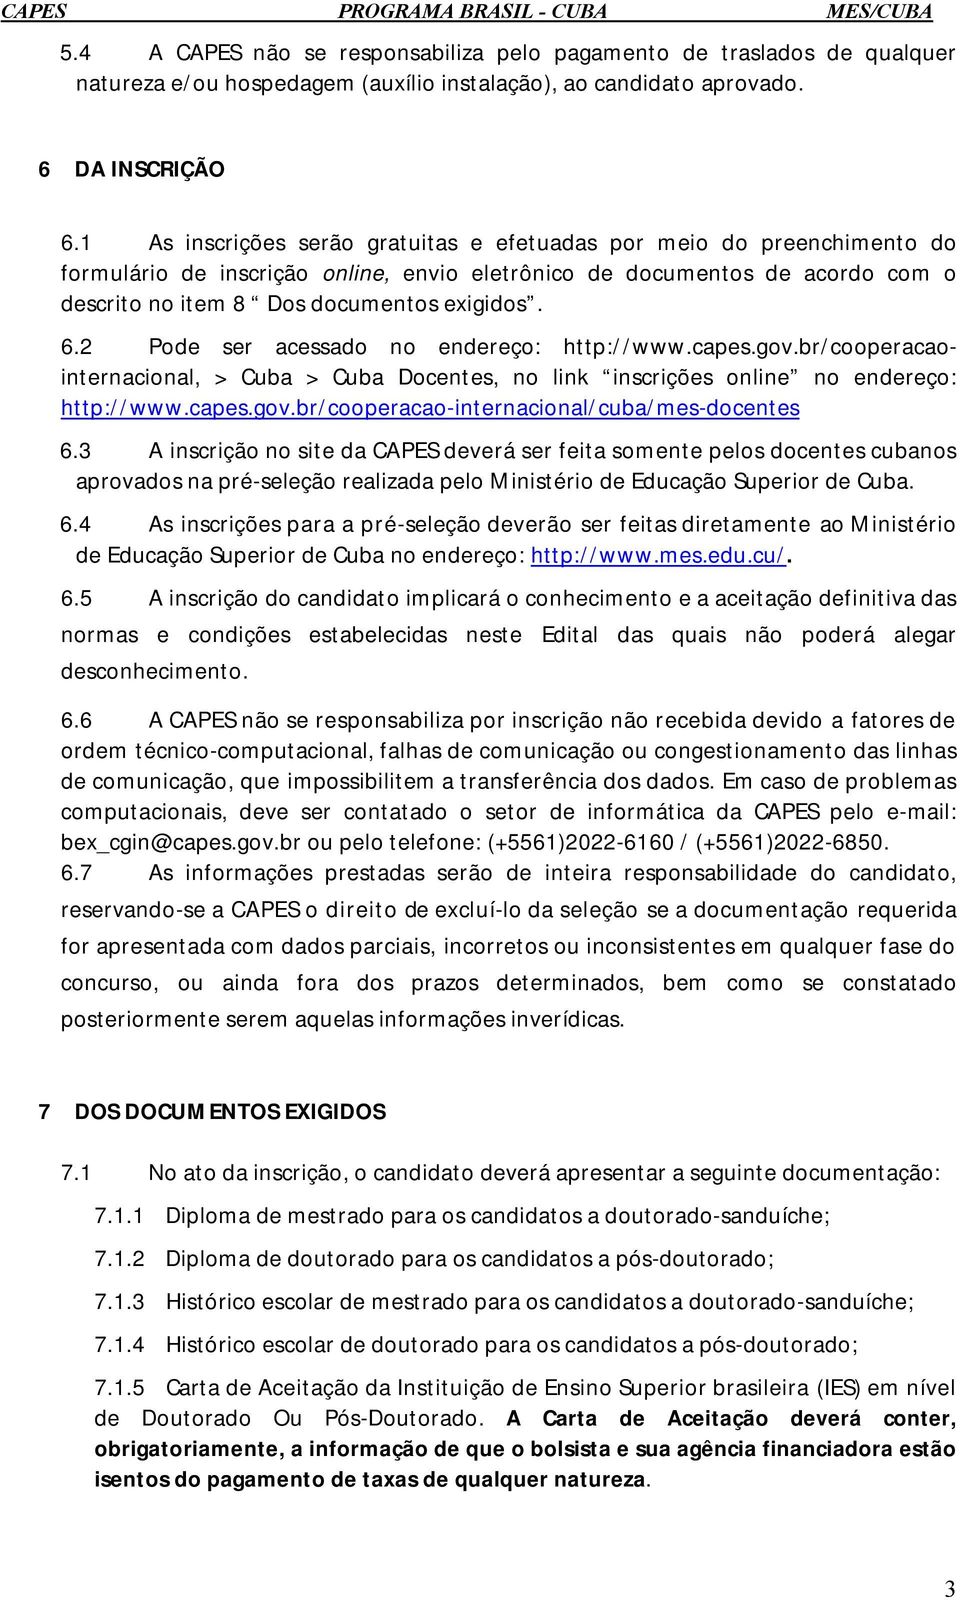 2 Pode ser acessado no endereço: http://www.capes.gov.br/cooperacaointernacional, > Cuba > Cuba Docentes, no link inscrições online no endereço: http://www.capes.gov.br/cooperacao-internacional/cuba/mes-docentes 6.